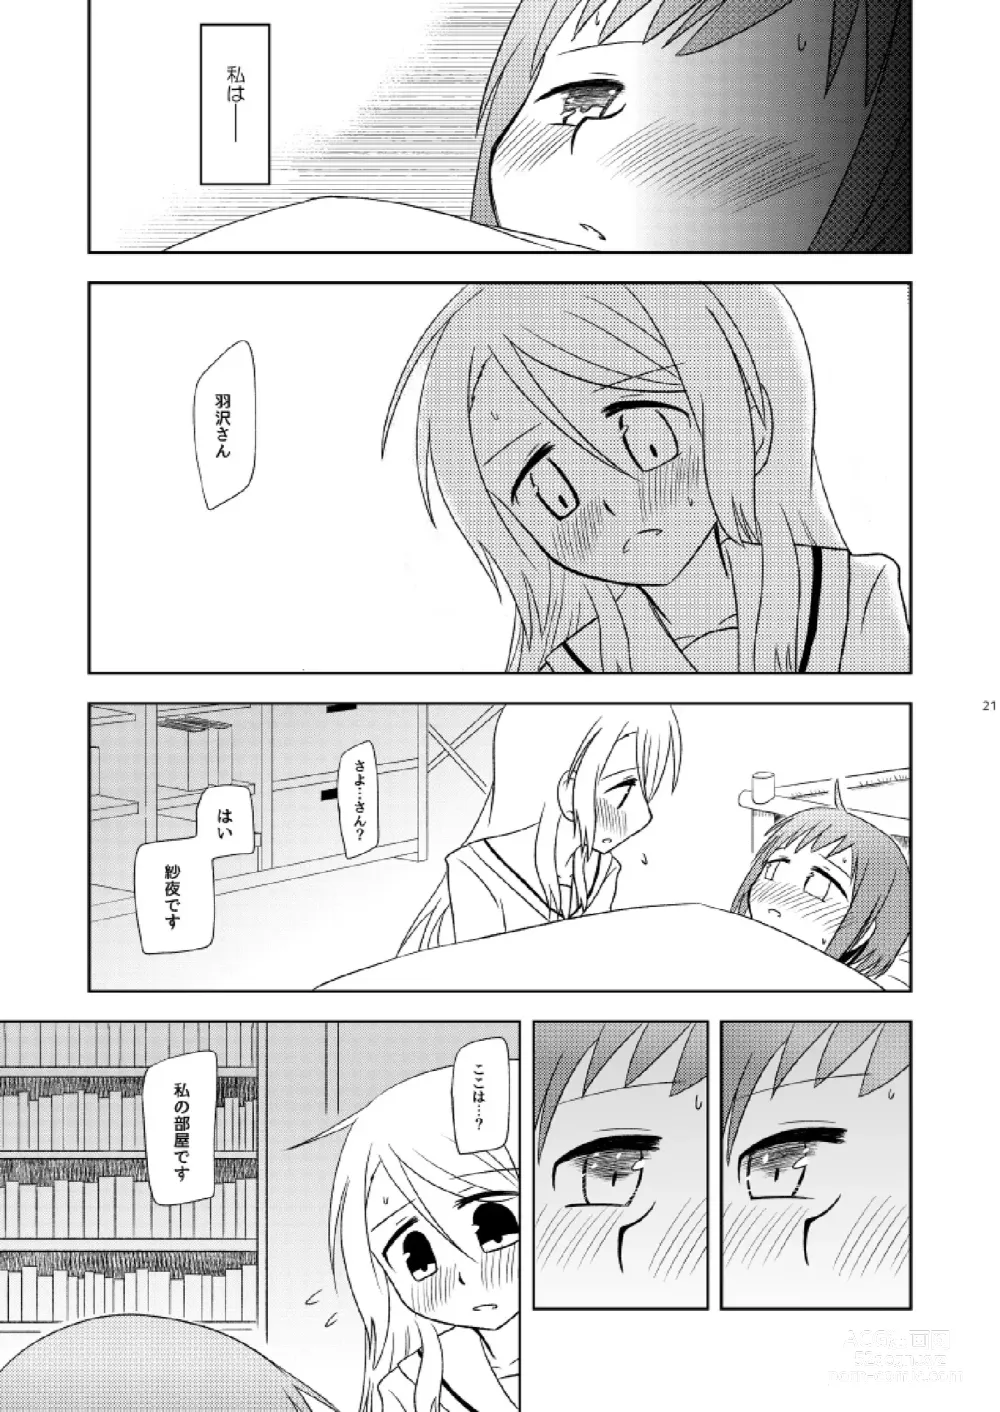 Page 23 of doujinshi Watashi Dake no